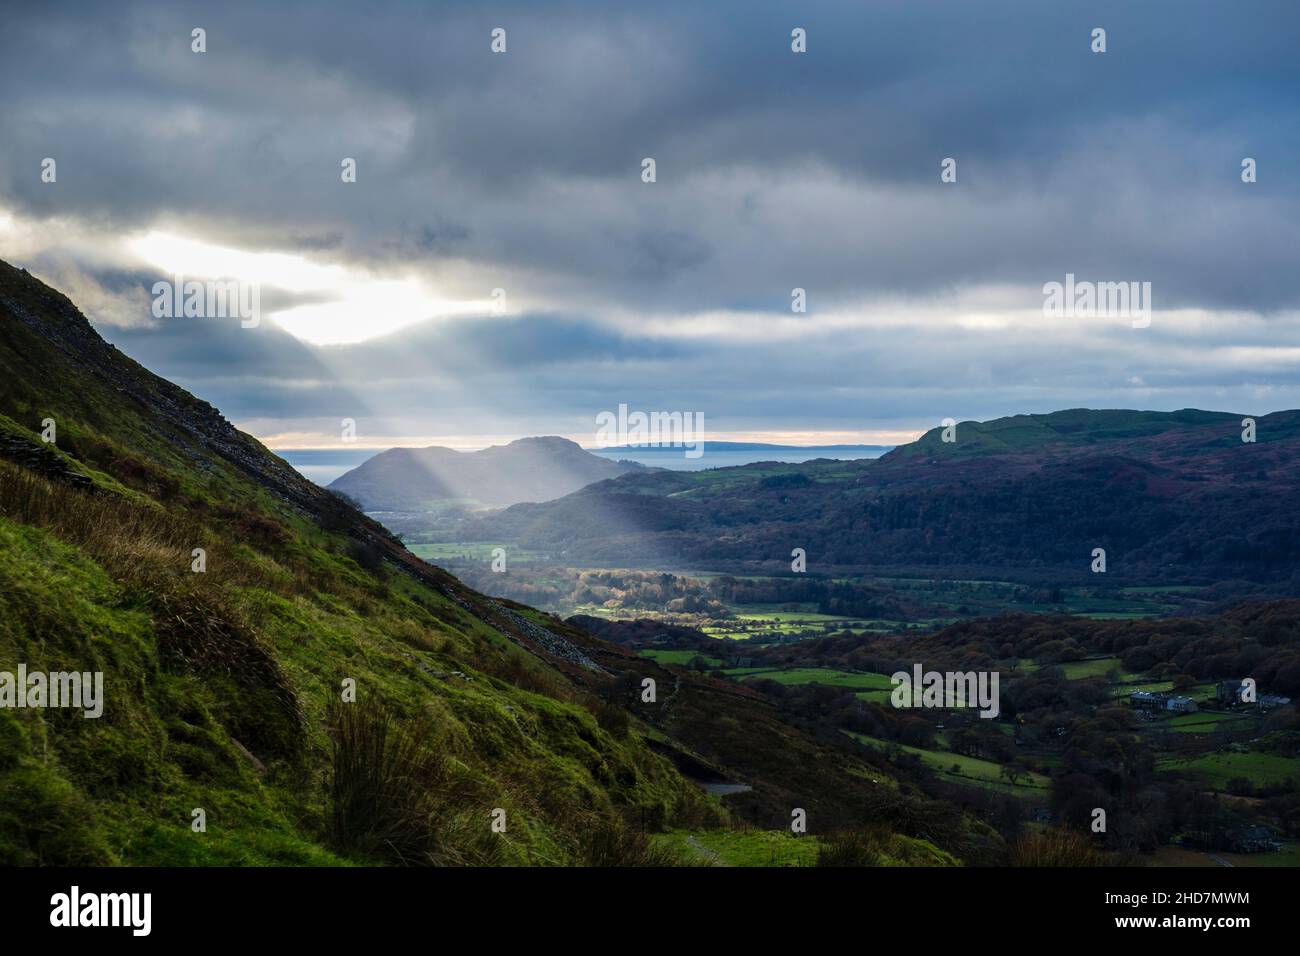 Un albero di luce del sole brilla attraverso un gap nelle nuvole nella valle vista dalla montagna Cnicht. Croesor, Gwynedd, Galles, Regno Unito, Gran Bretagna Foto Stock